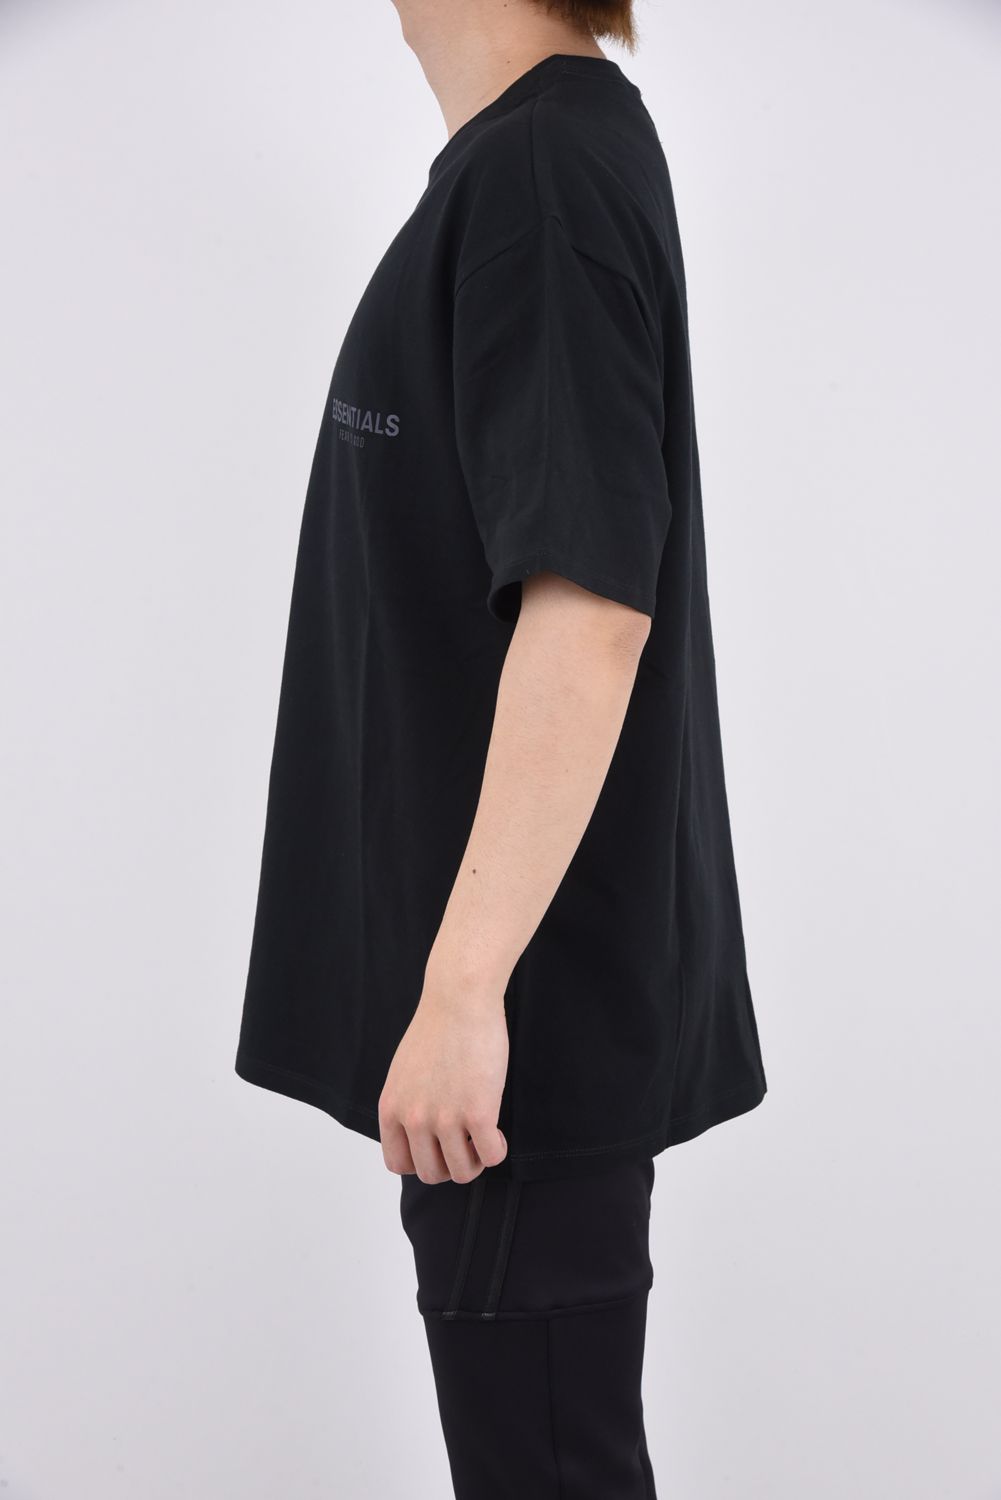 ESSENTIALS ONE POINT LOGO T-Shirt / ワンポイント ロゴ 半袖 Tシャツ ブラック - S